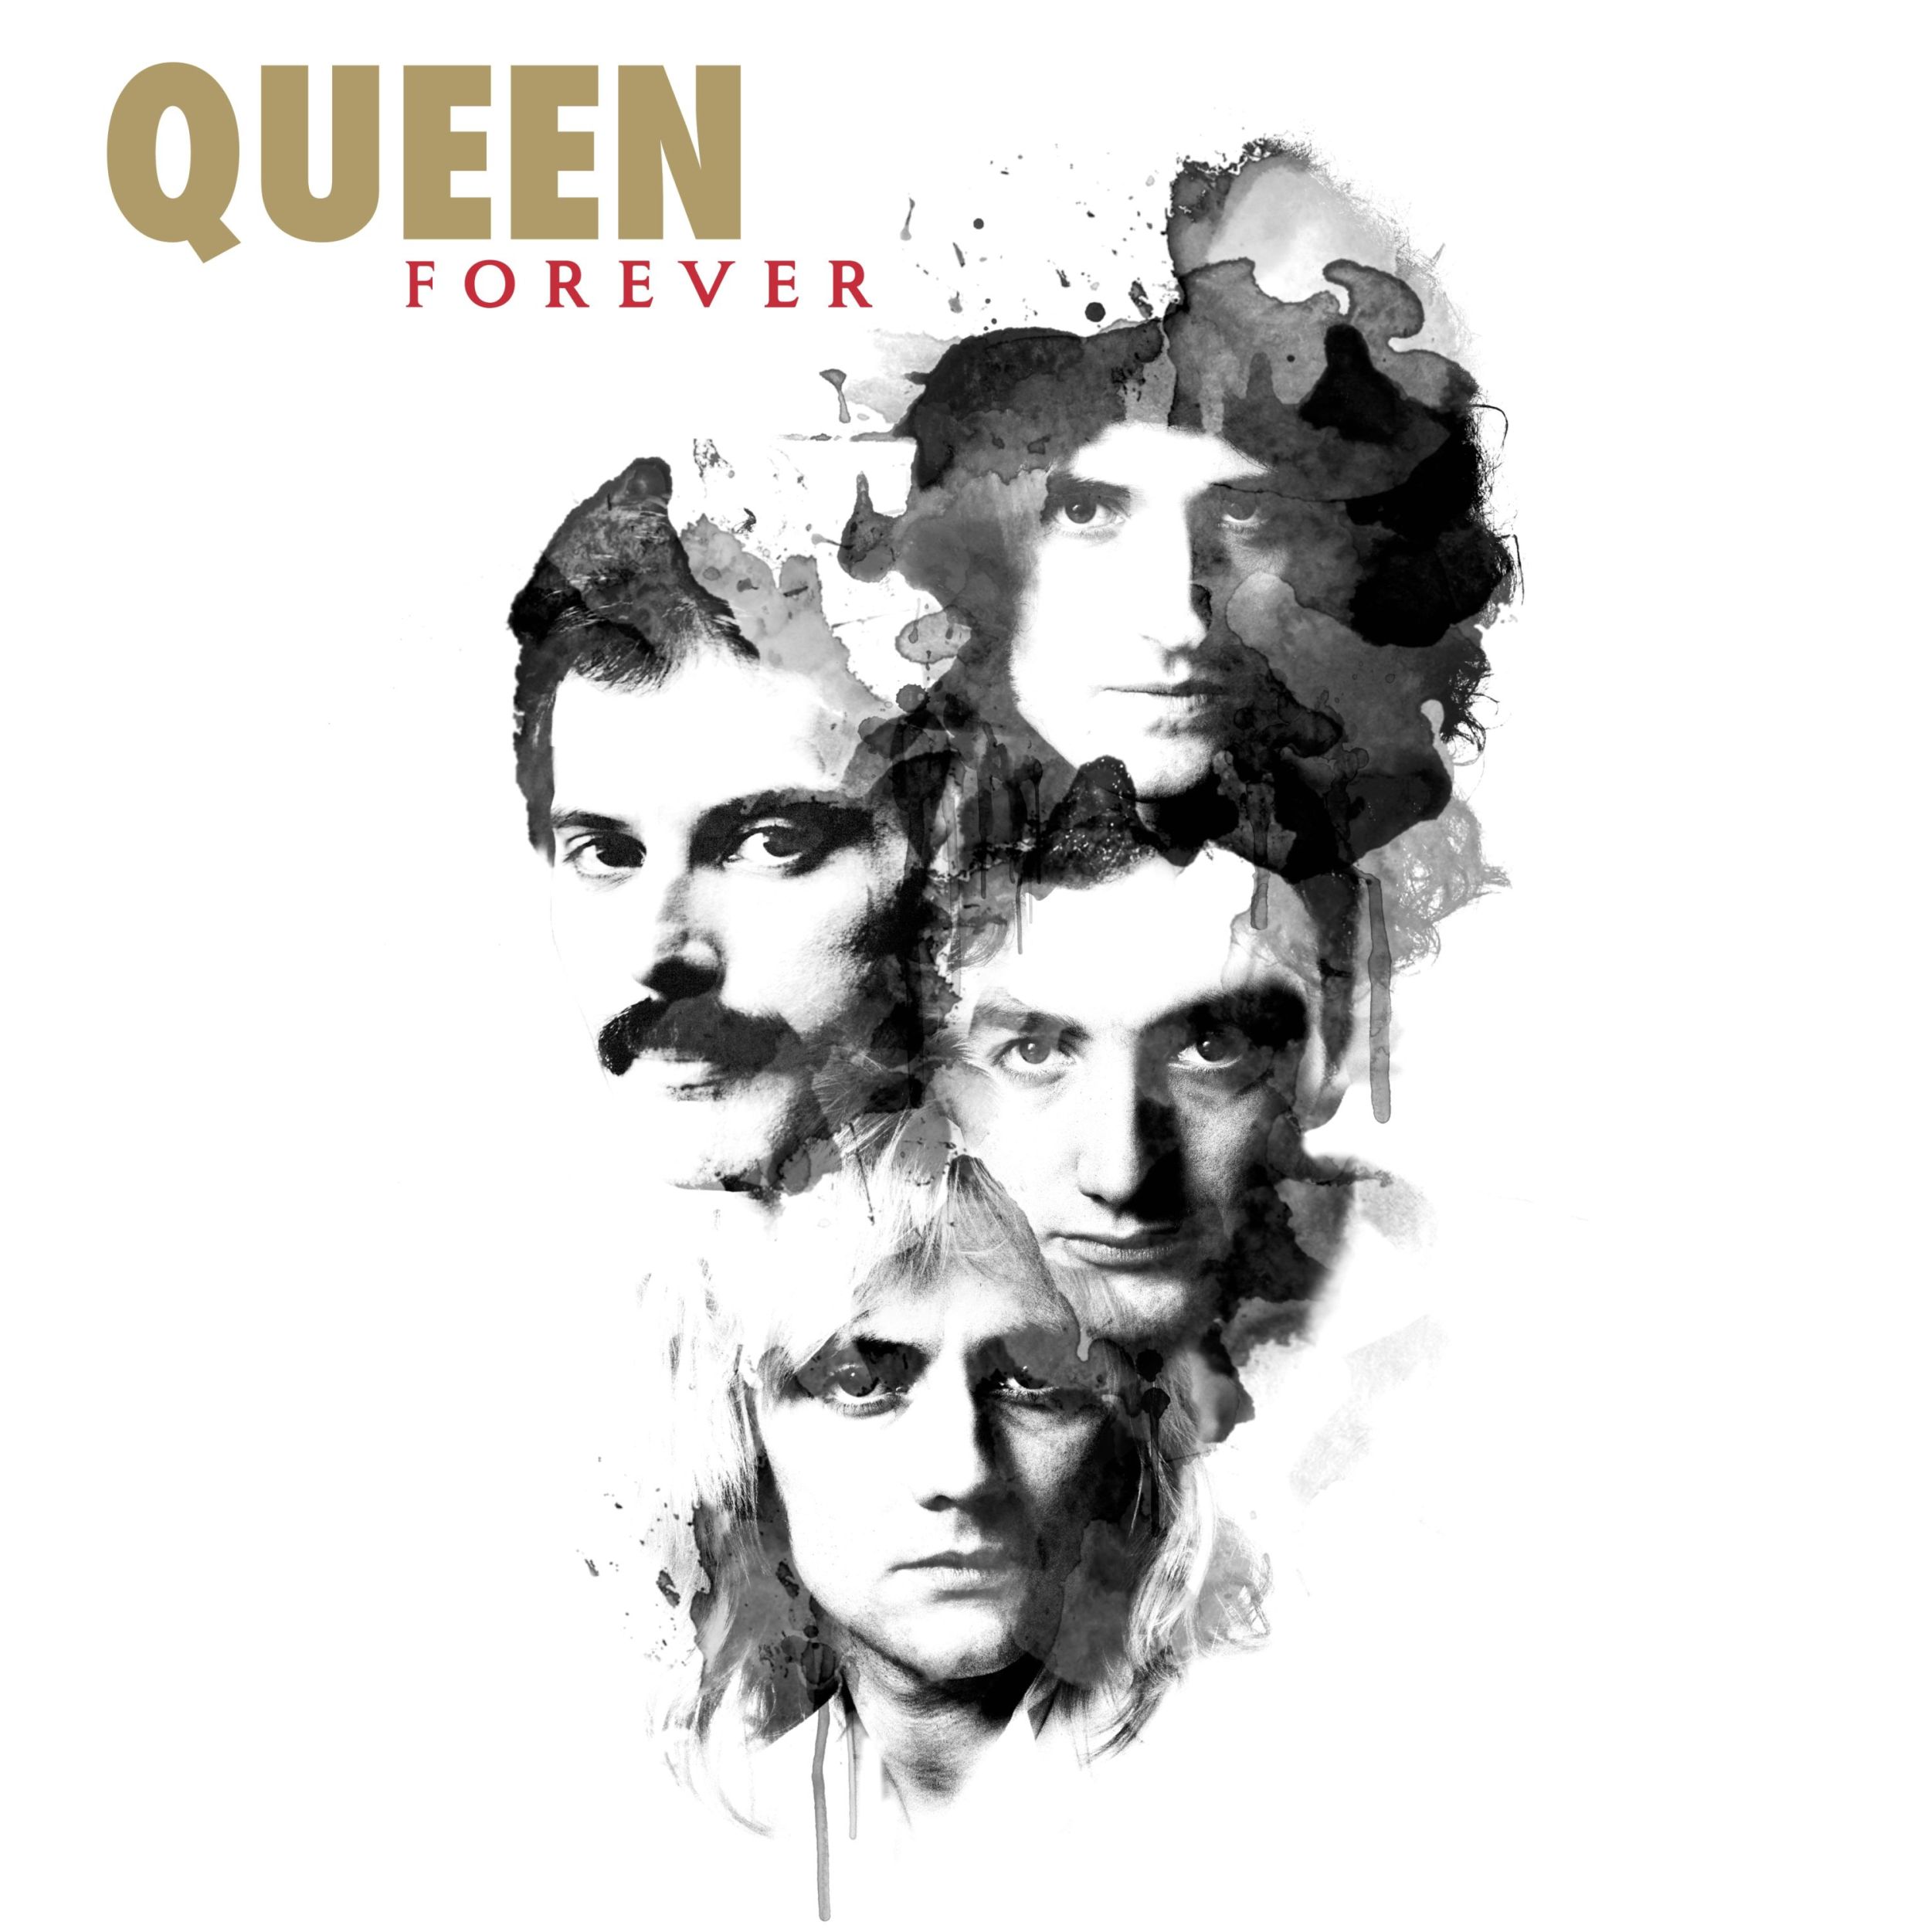 L'11 Novembre esce "QUEEN FOREVER" con gli inediti di Freddie Mercury e l'atteso duetto con Michael Jackson